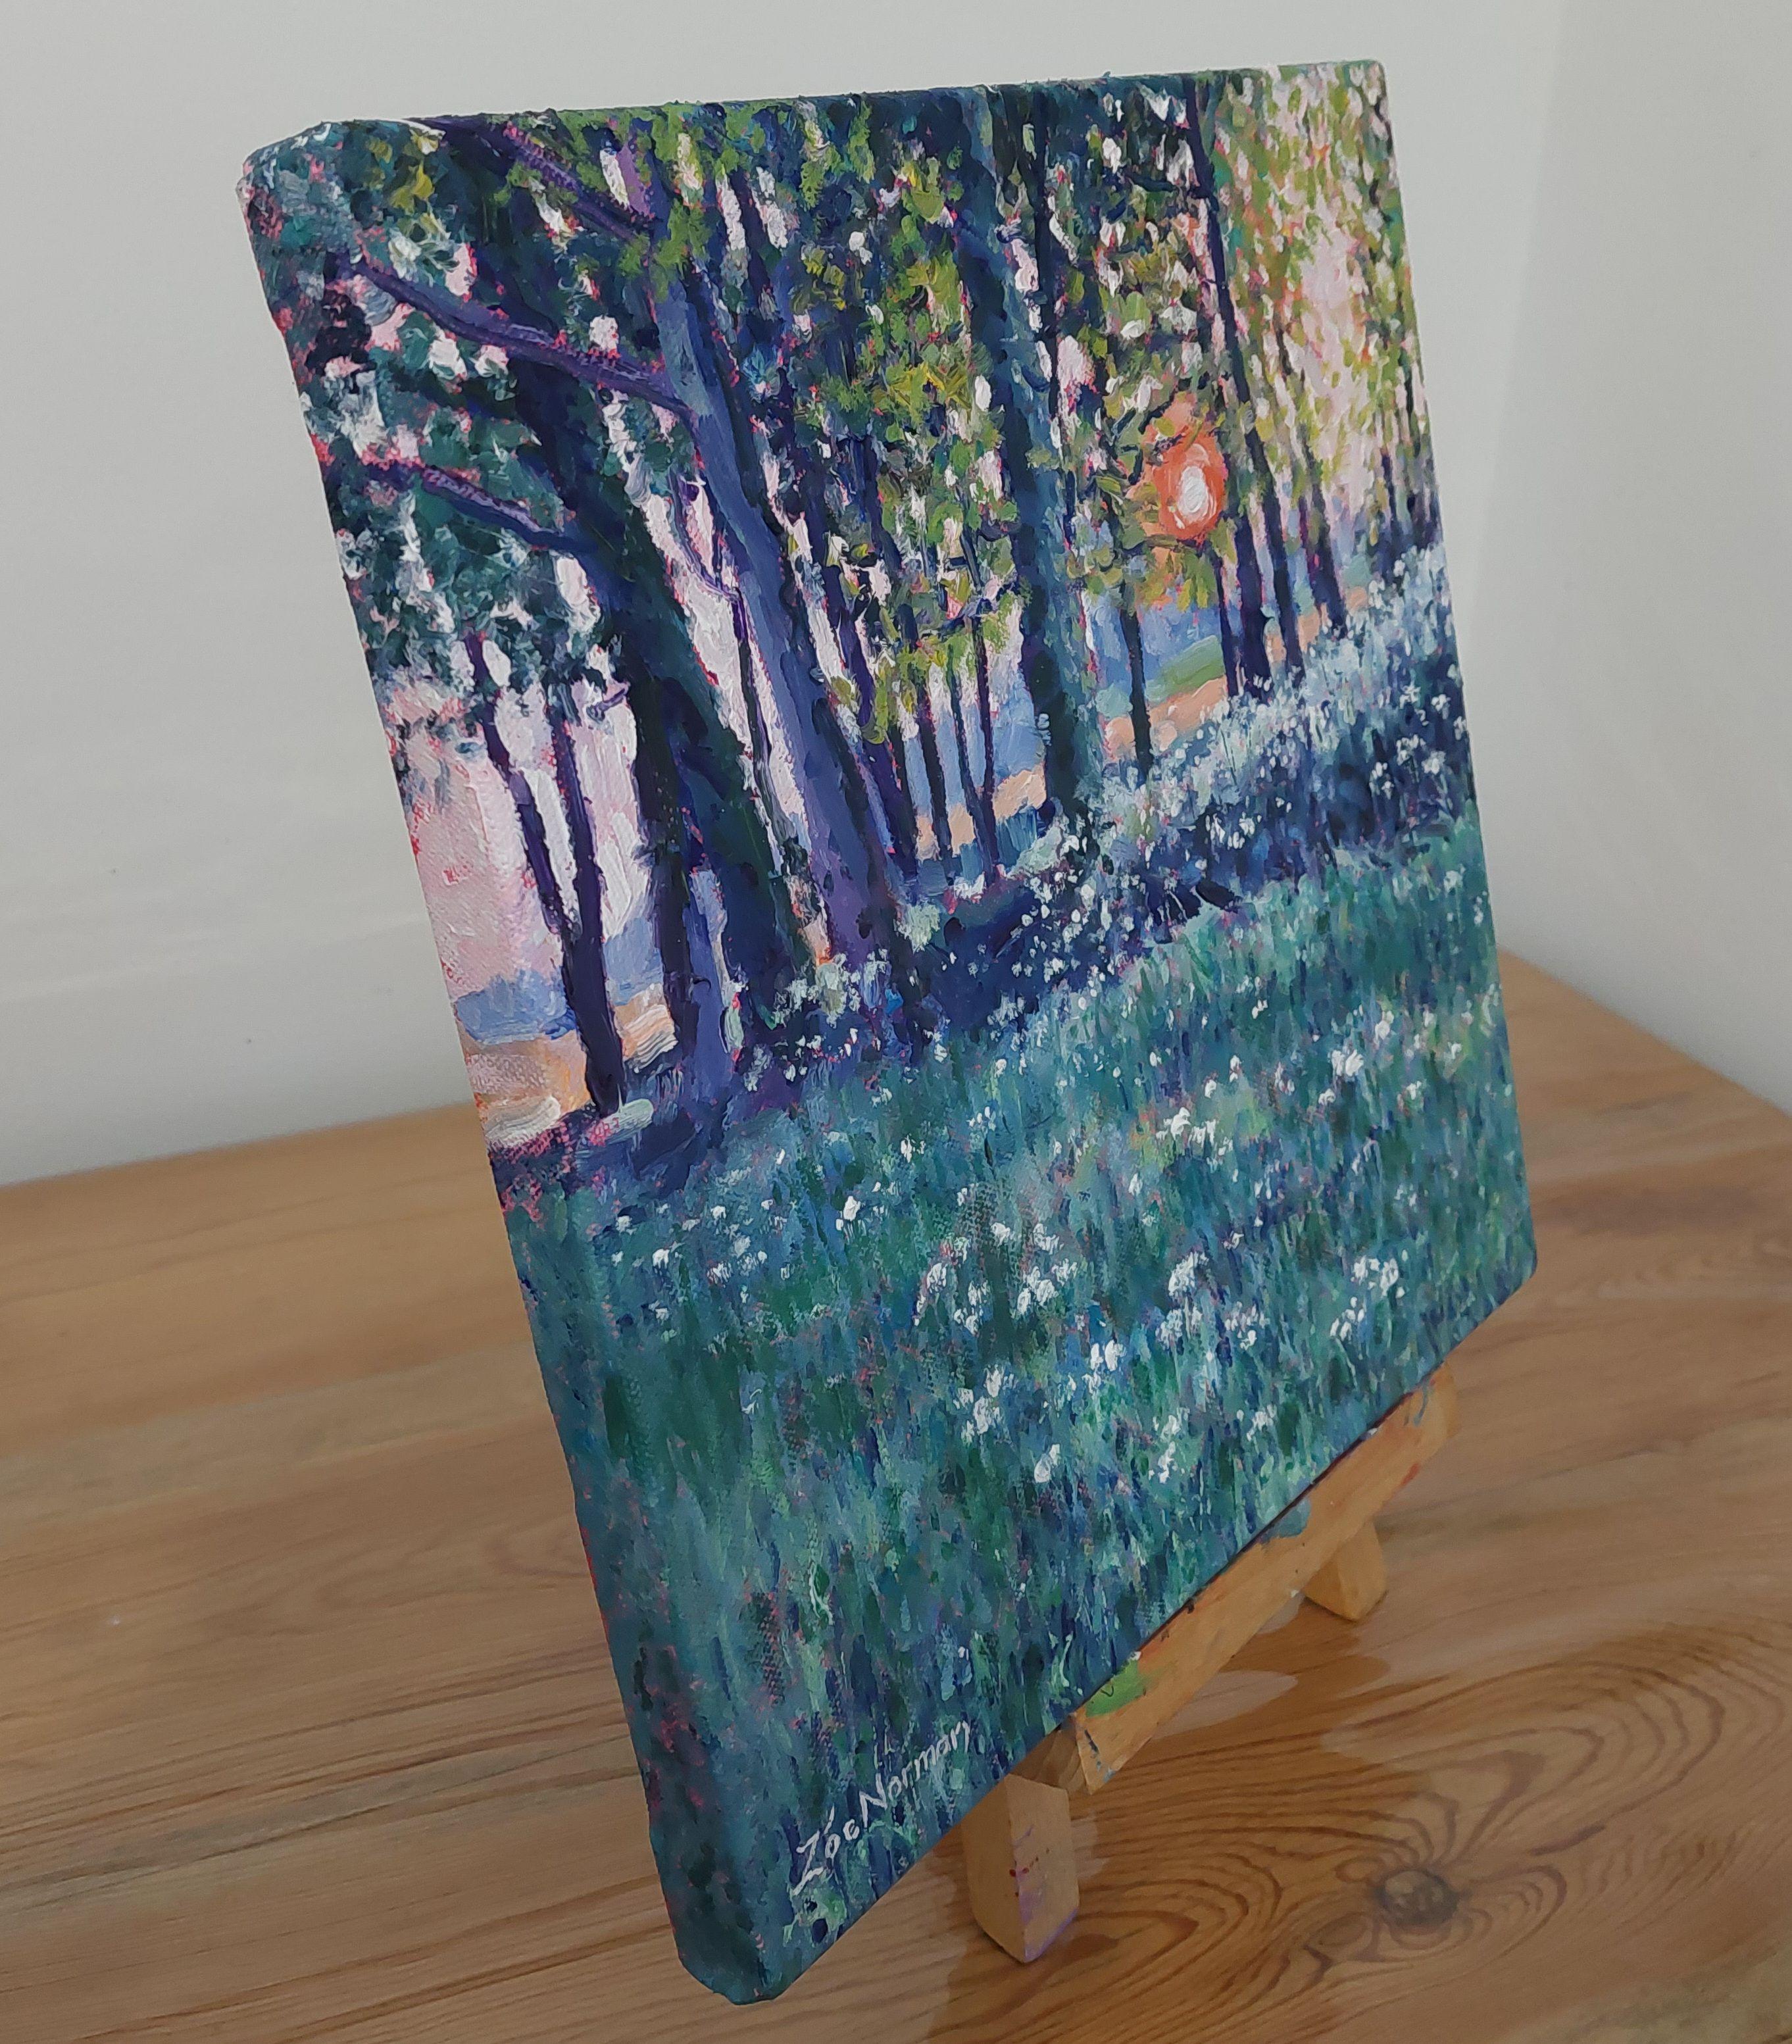 Impressionnisme contemporain Cette peinture a été inspirée par une promenade nocturne. Les jolies teintes bleu-vert et violettes du persil de vache et des herbes du premier plan évoquent si bien l'été. Le soleil s'enfonce derrière les arbres